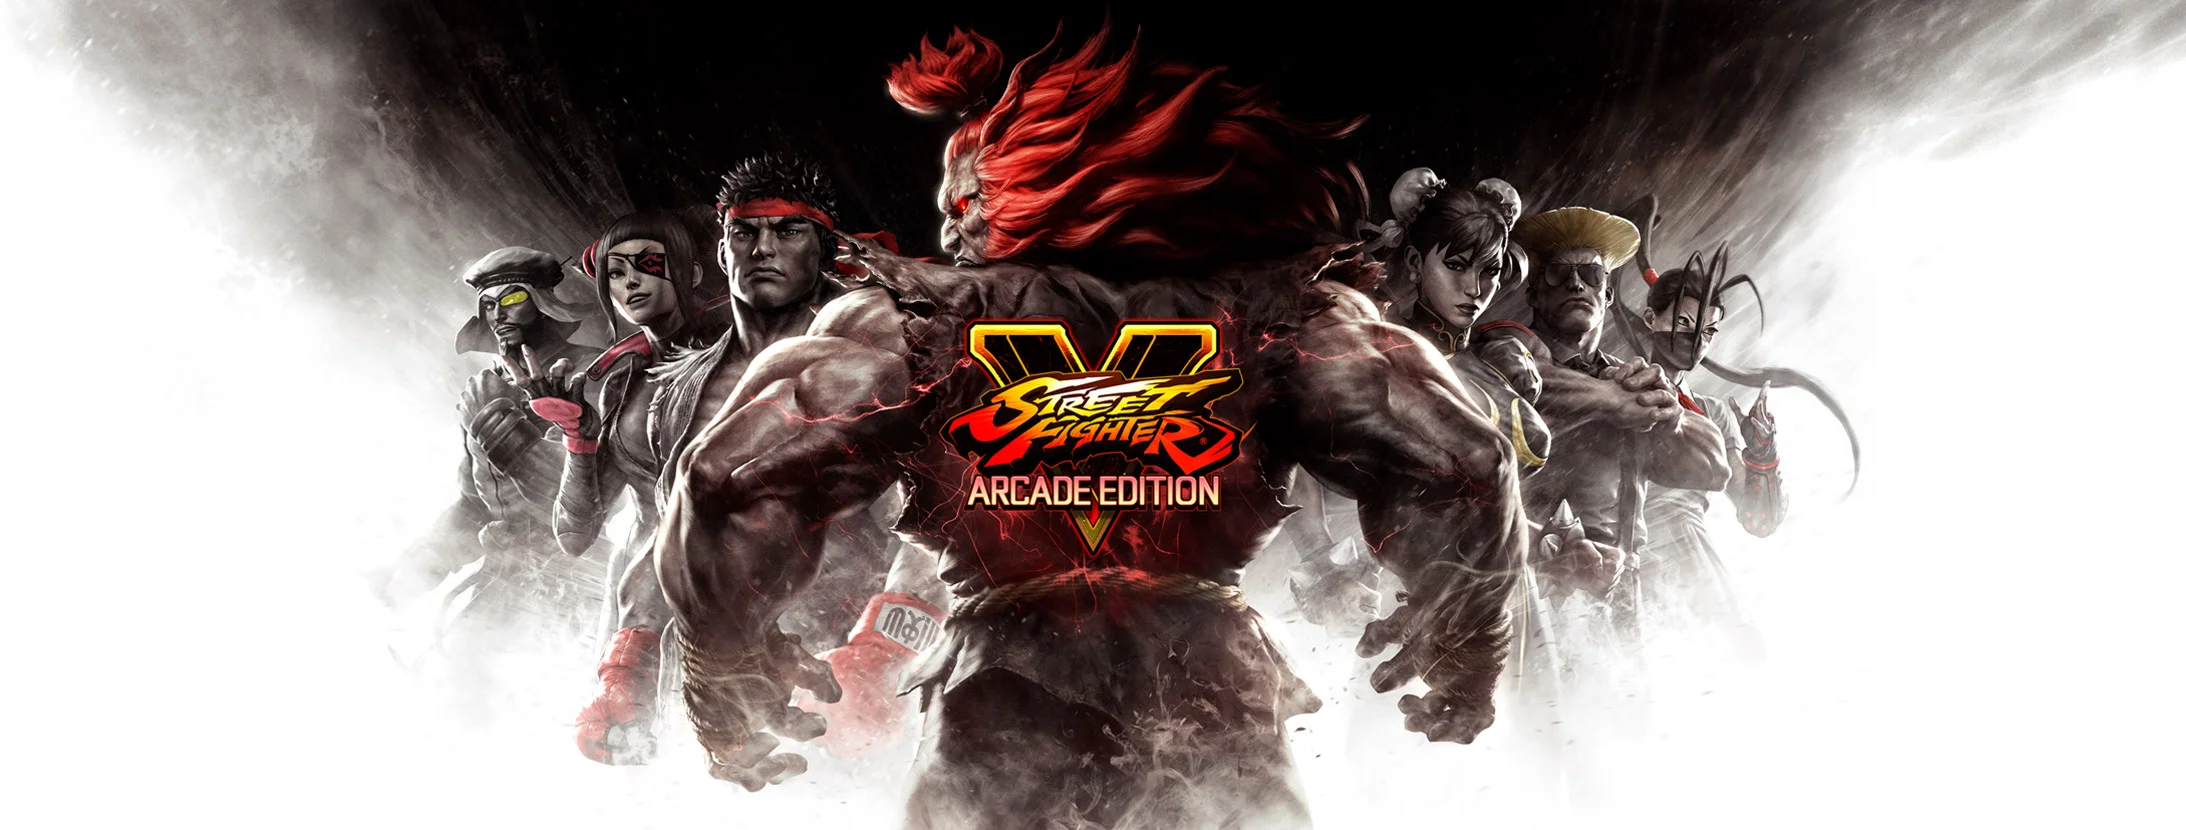 Суть. Street Fighter V: Arcade Edition — спорная игра, хороший файтинг, отличный сервис - фото 1